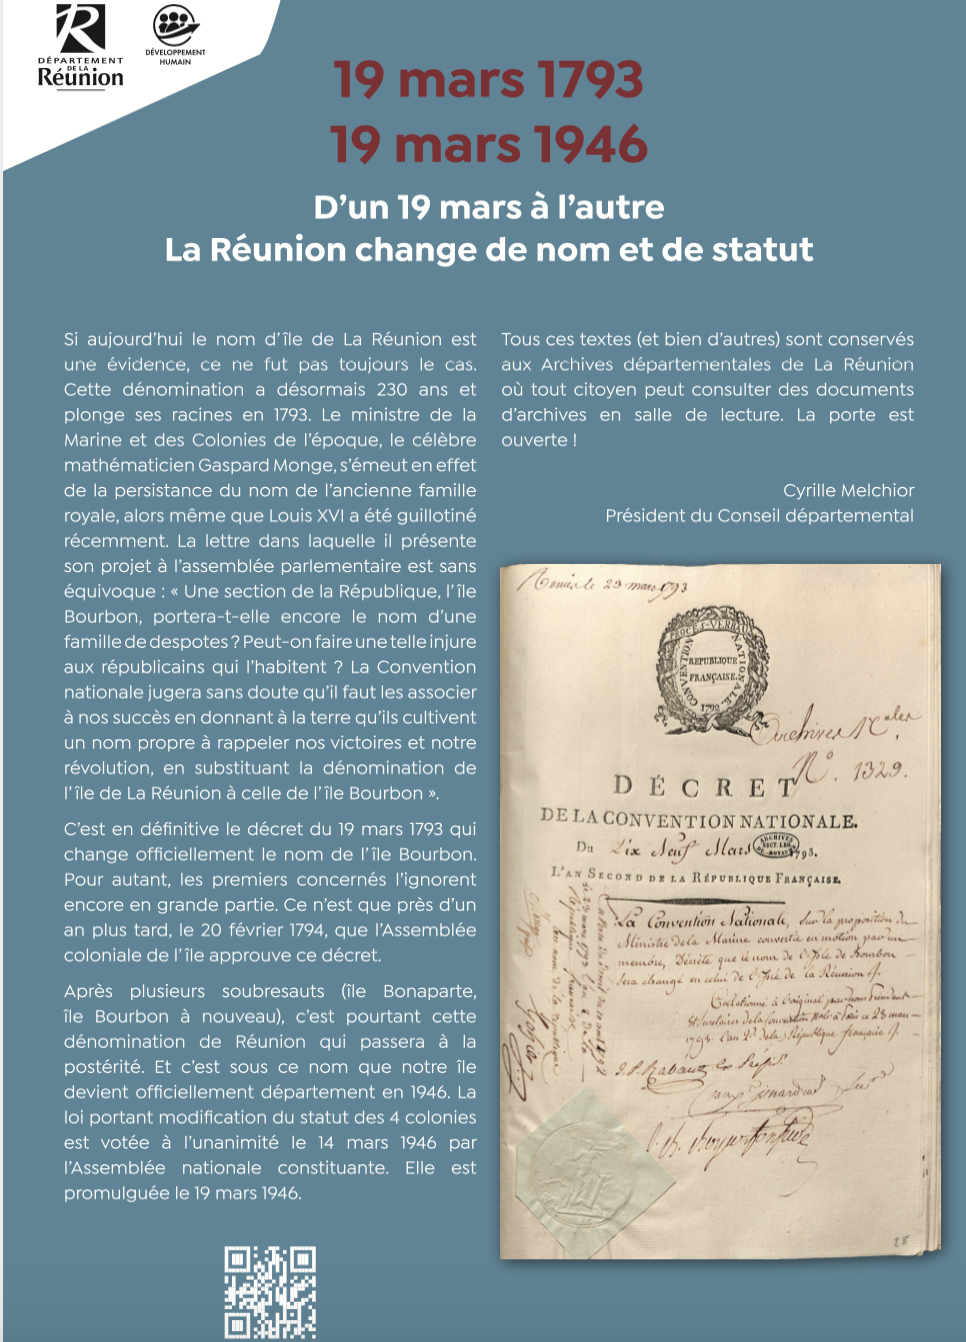 D’un 19 mars à l’autre, La Réunion change de nom et de statut 